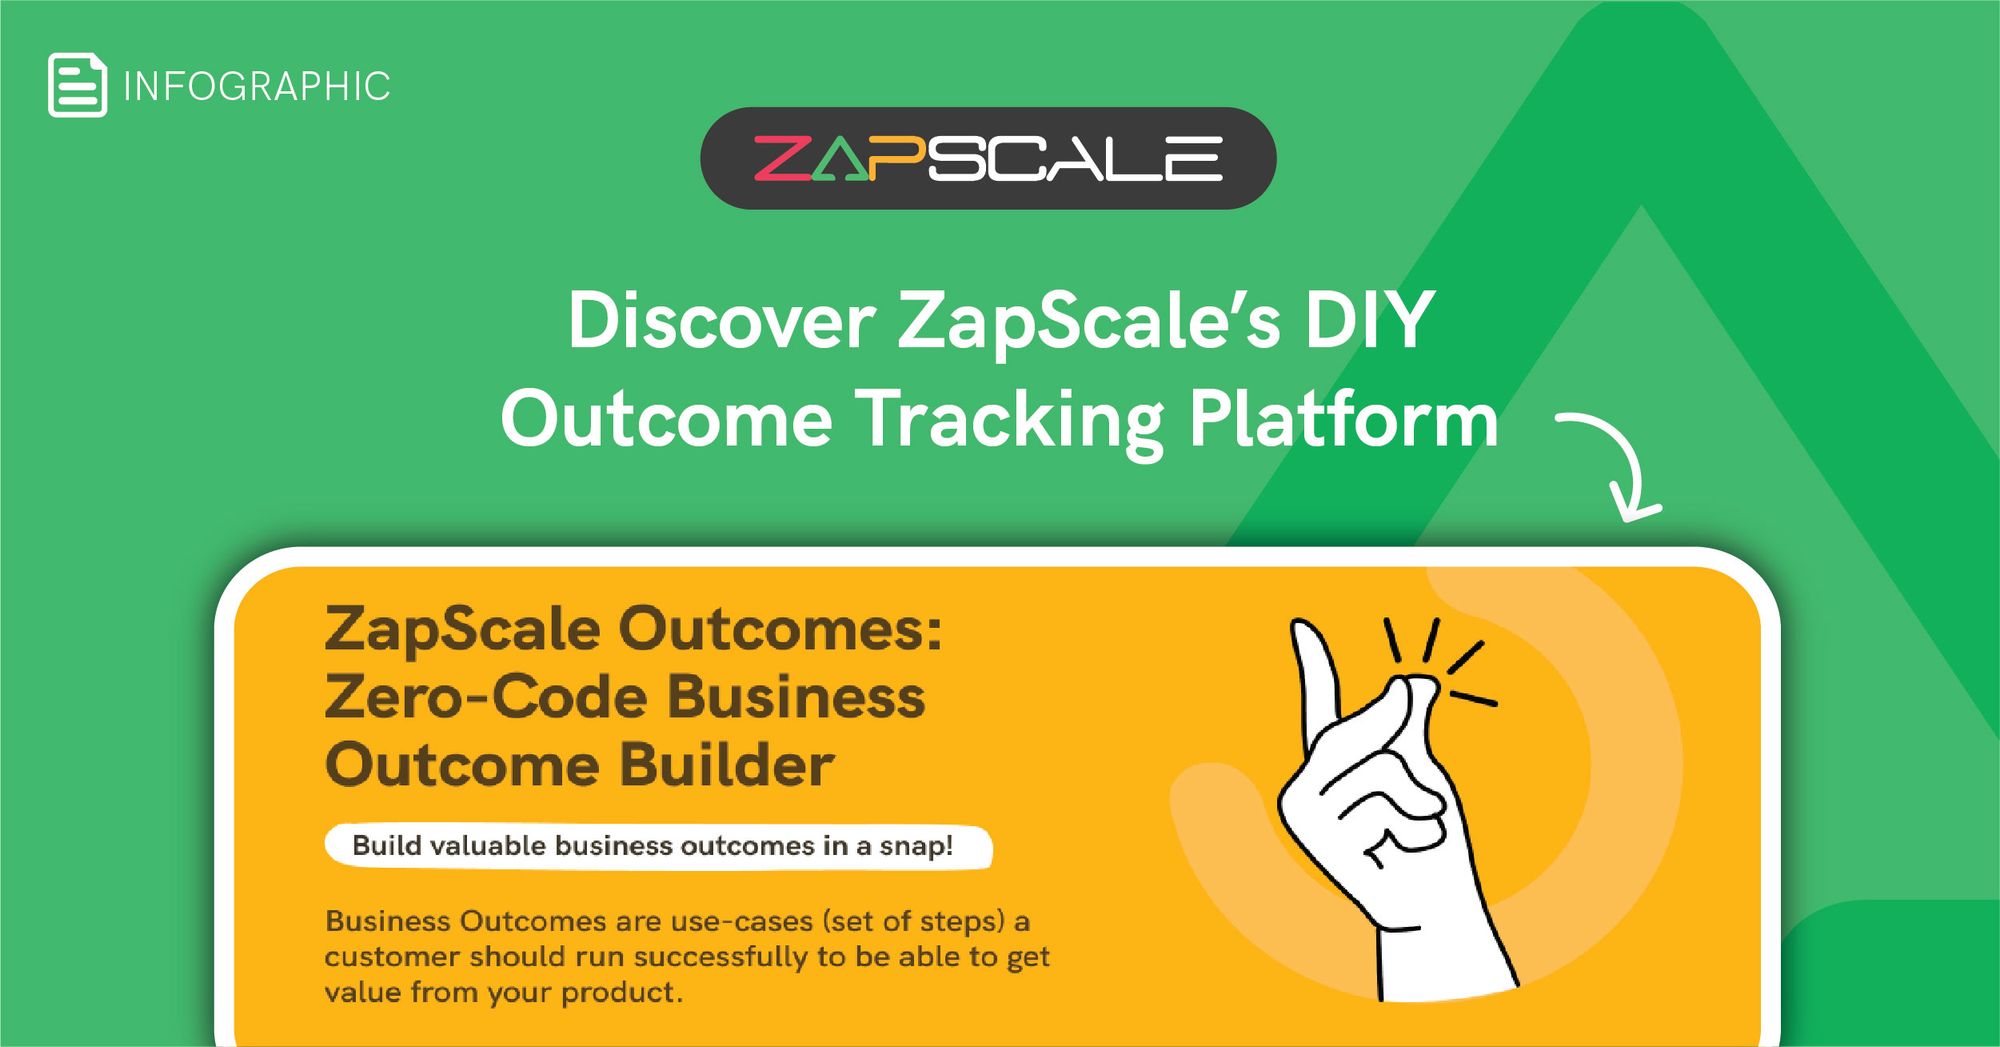 ZapScale’s Zero-Code Business Outcome Builder